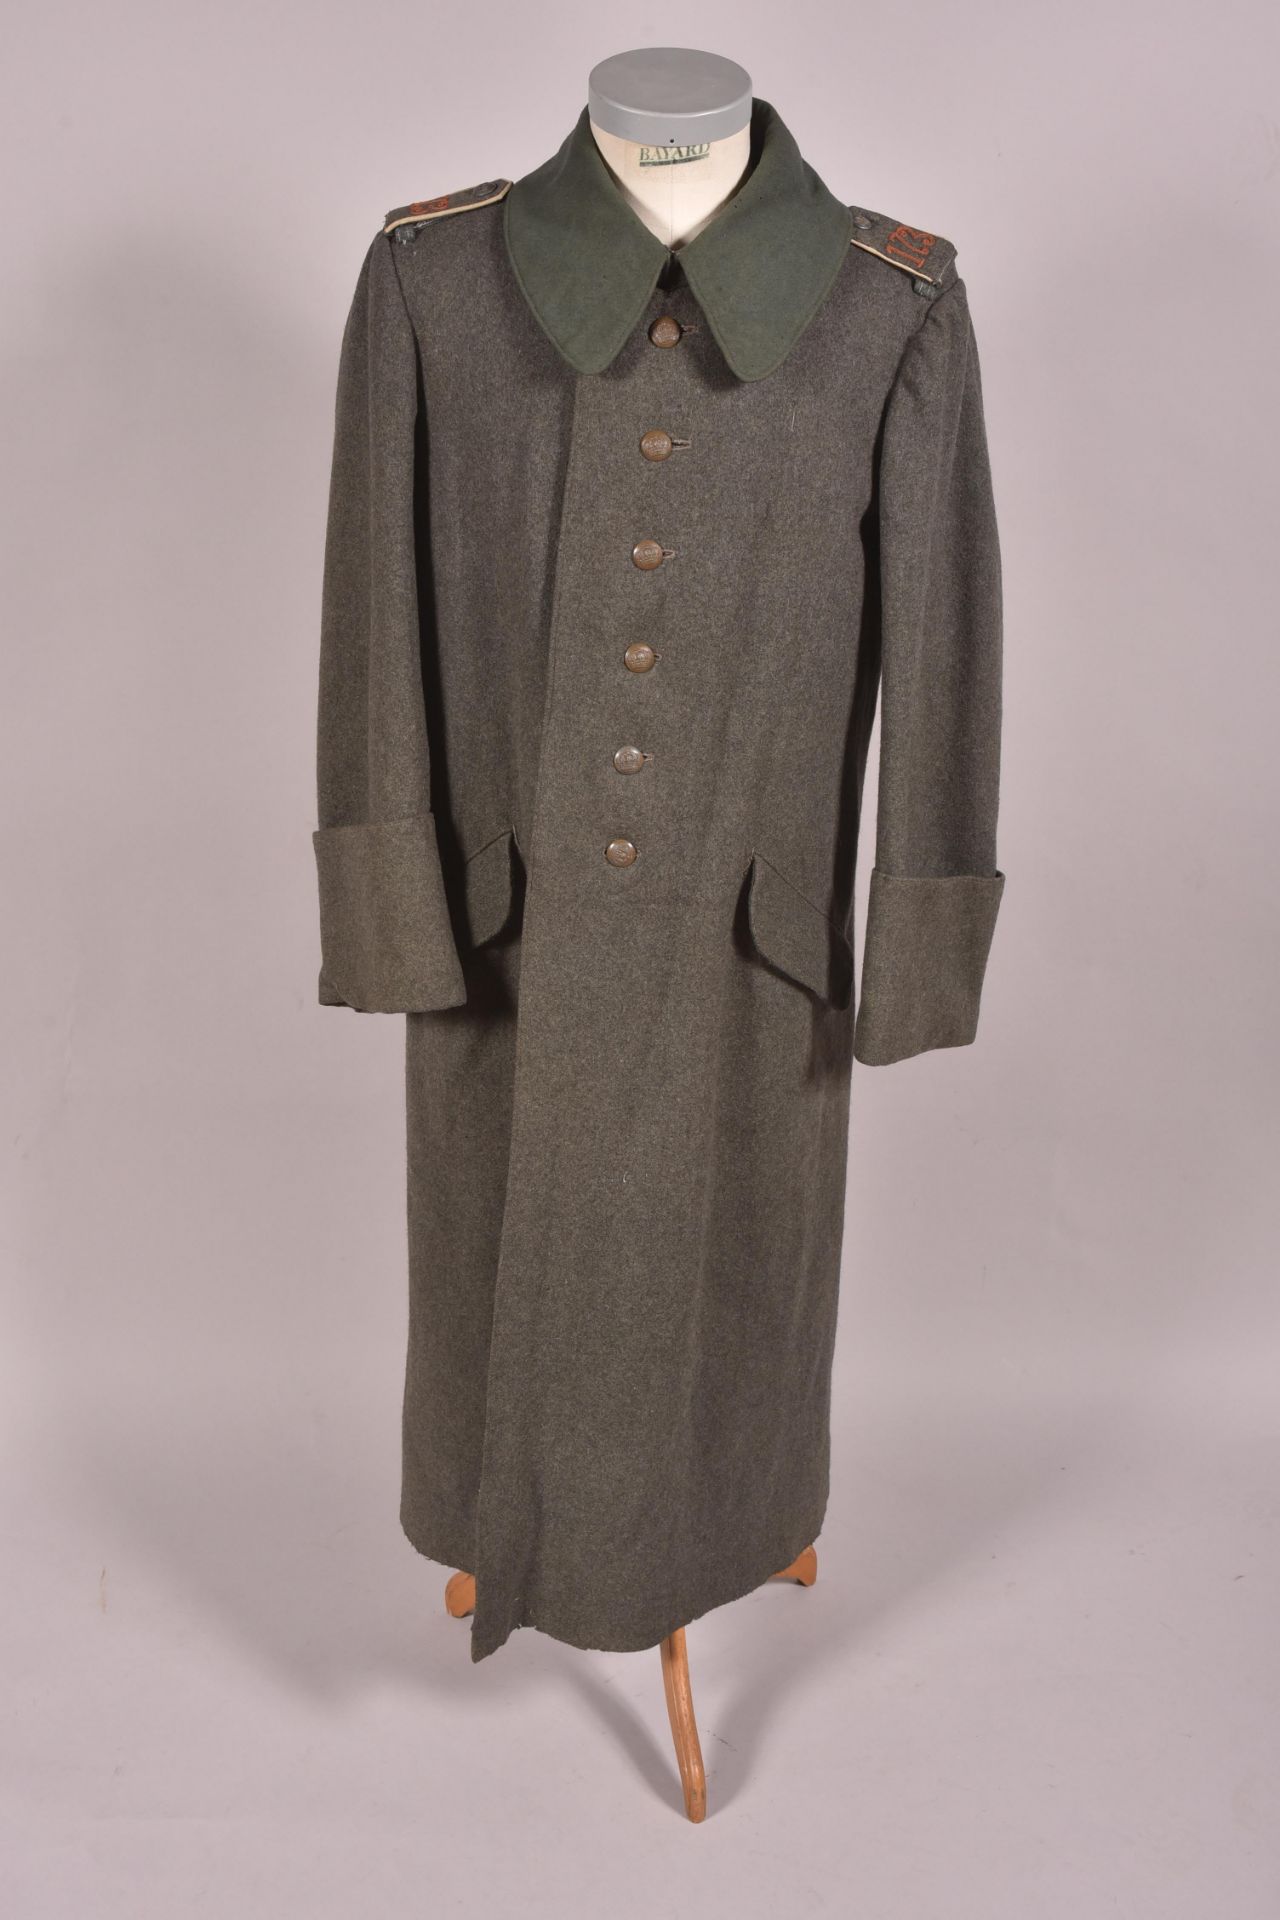 Manteau allemand troupe feldgrau modèle 1915. Il est en très bon état général, bien marqué du